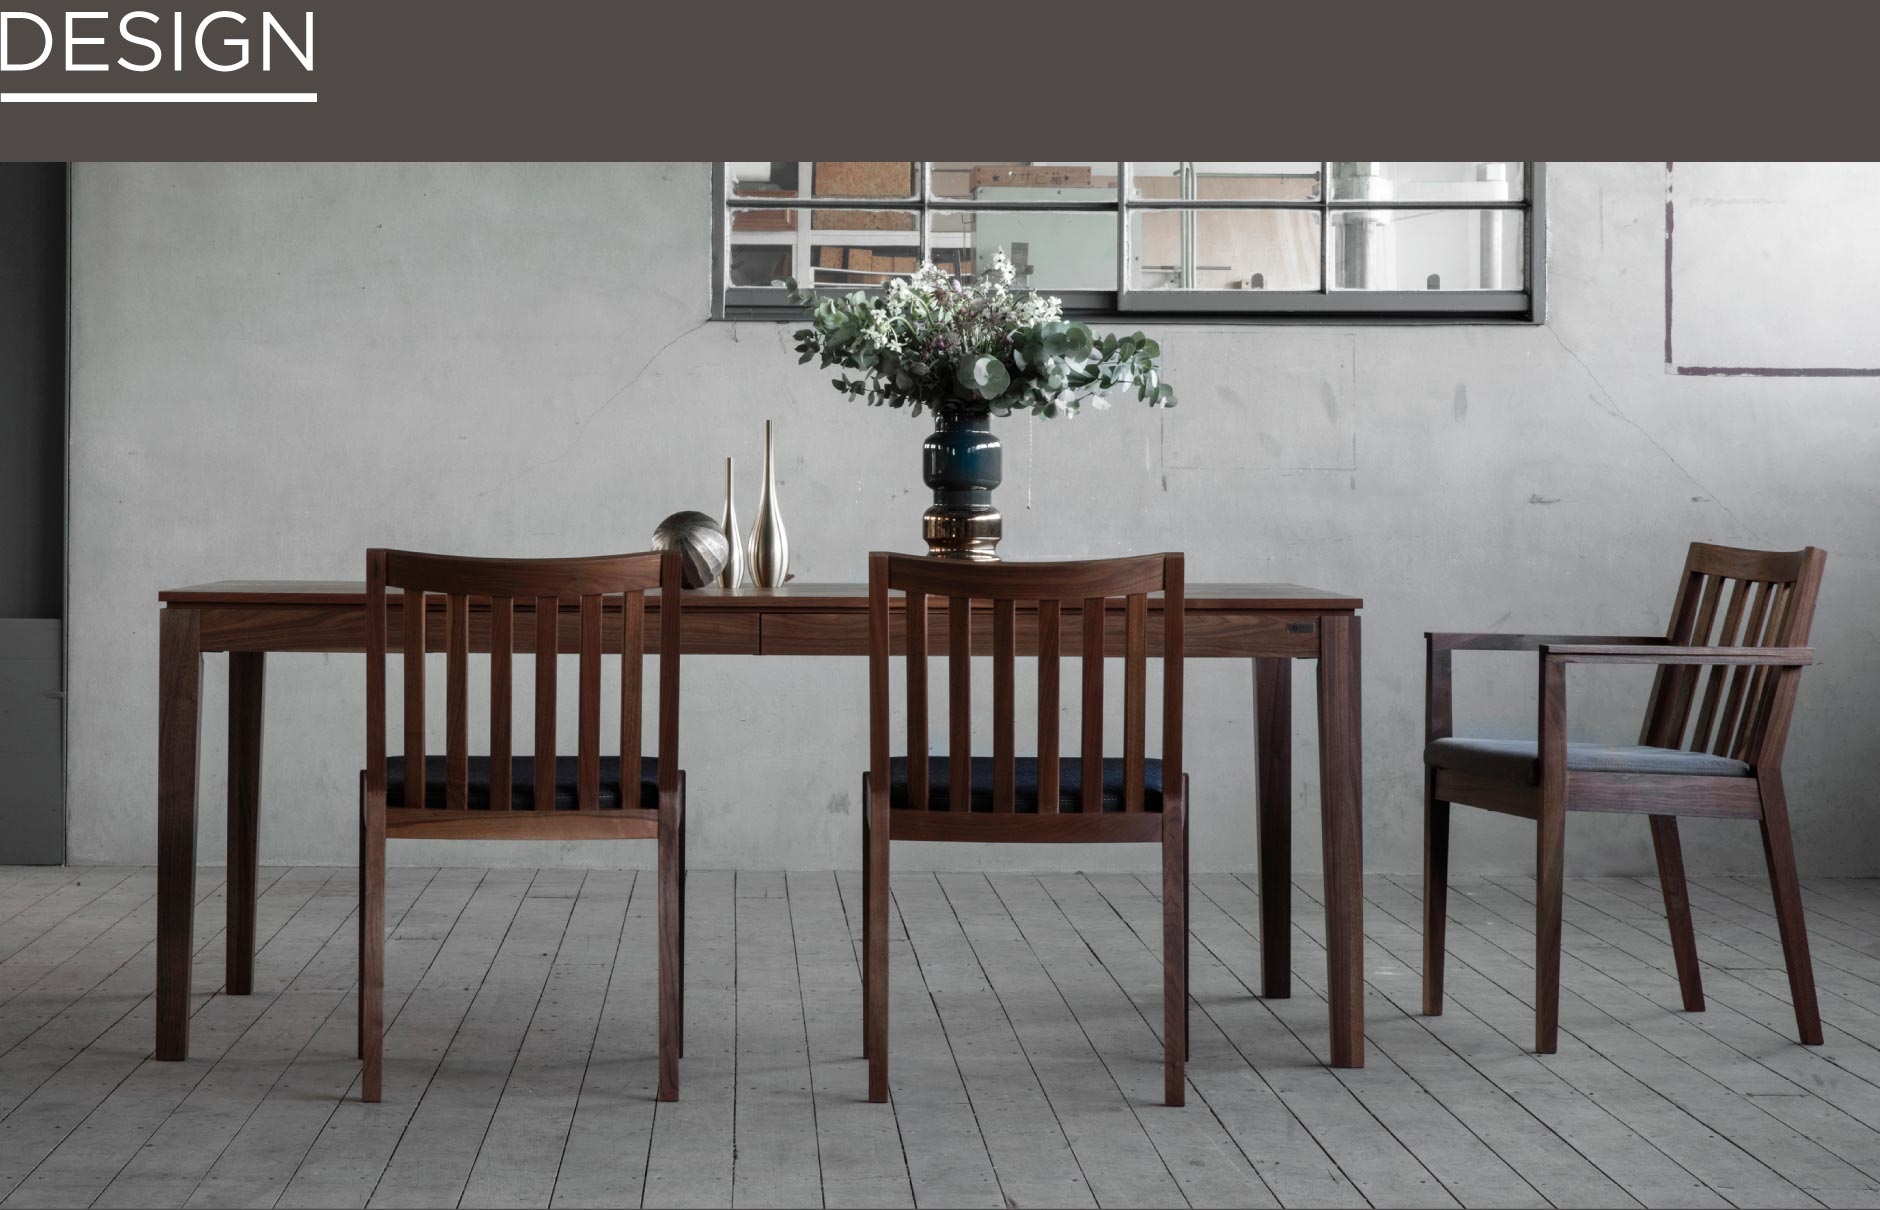 SOLID福岡の家具の中でも才色兼備なダイニングテーブル。引出しに食器や小物などの収納ができ、生活感を感じさせない空間を実現します。